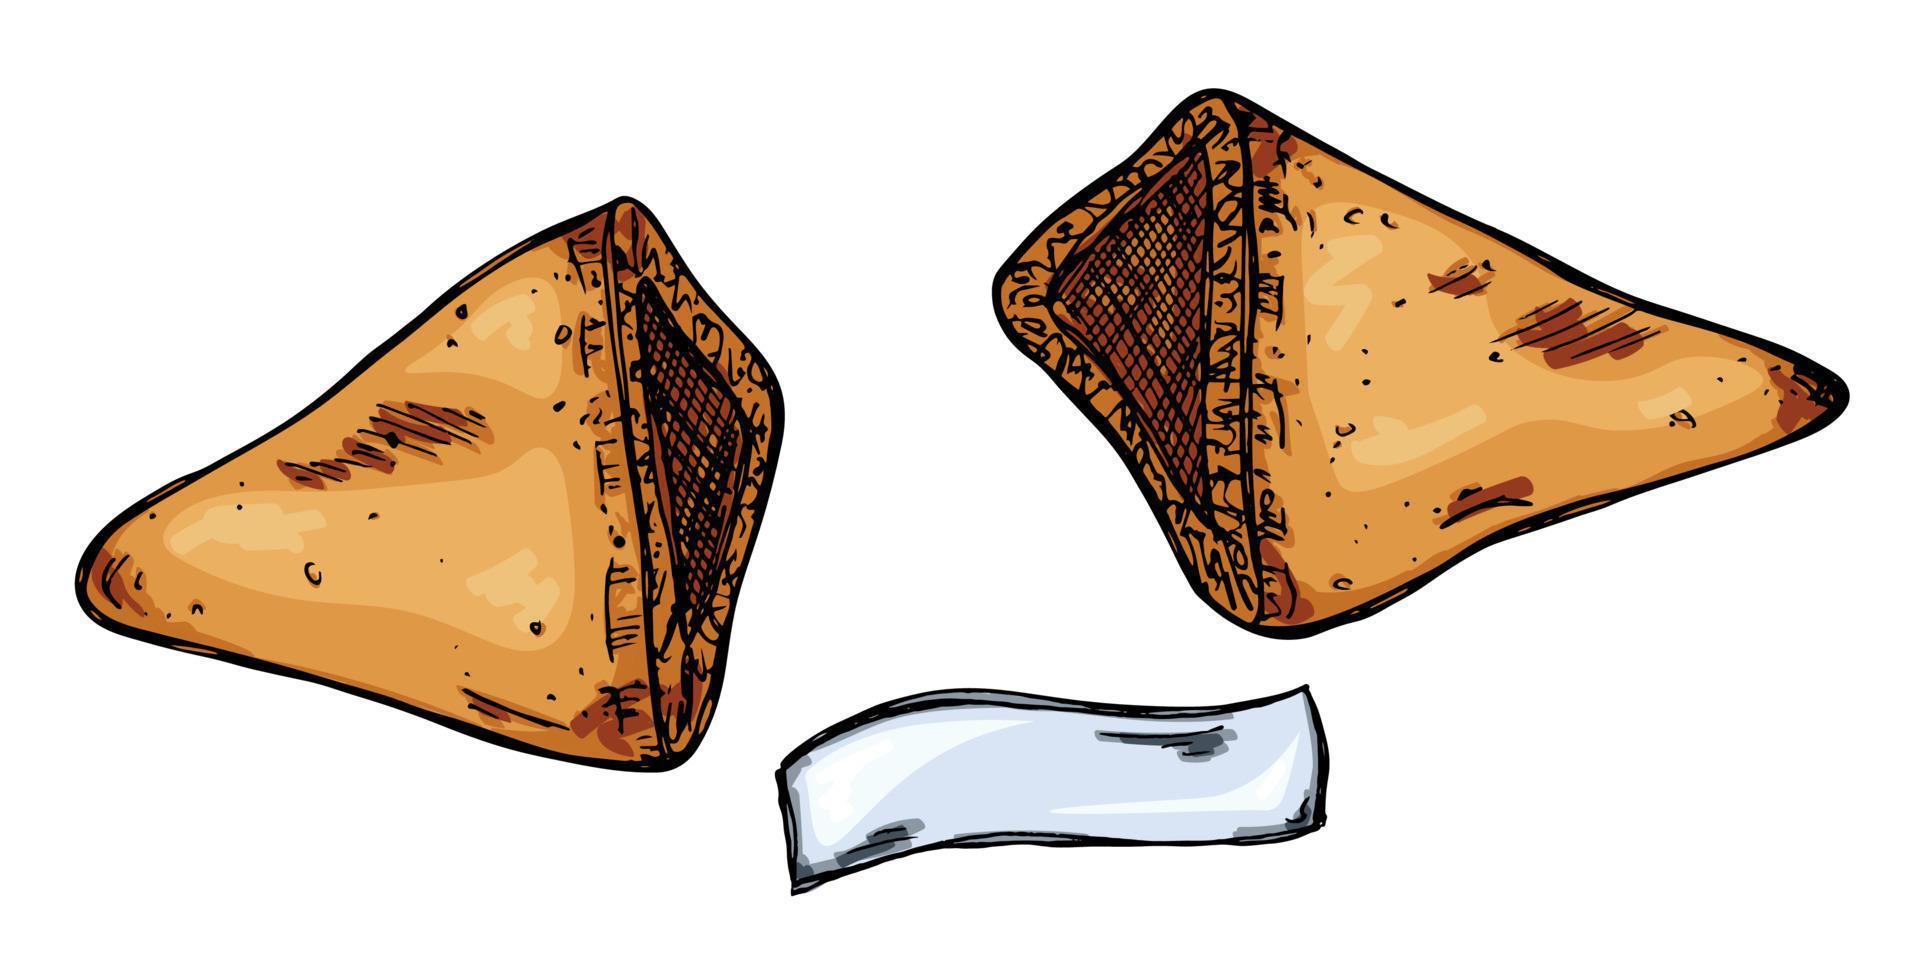 biscuits de fortune chinois dessinés à la main de vecteur isolés sur fond blanc. illustration de la nourriture. biscuit croustillant avec une feuille de papier vierge à l'intérieur.